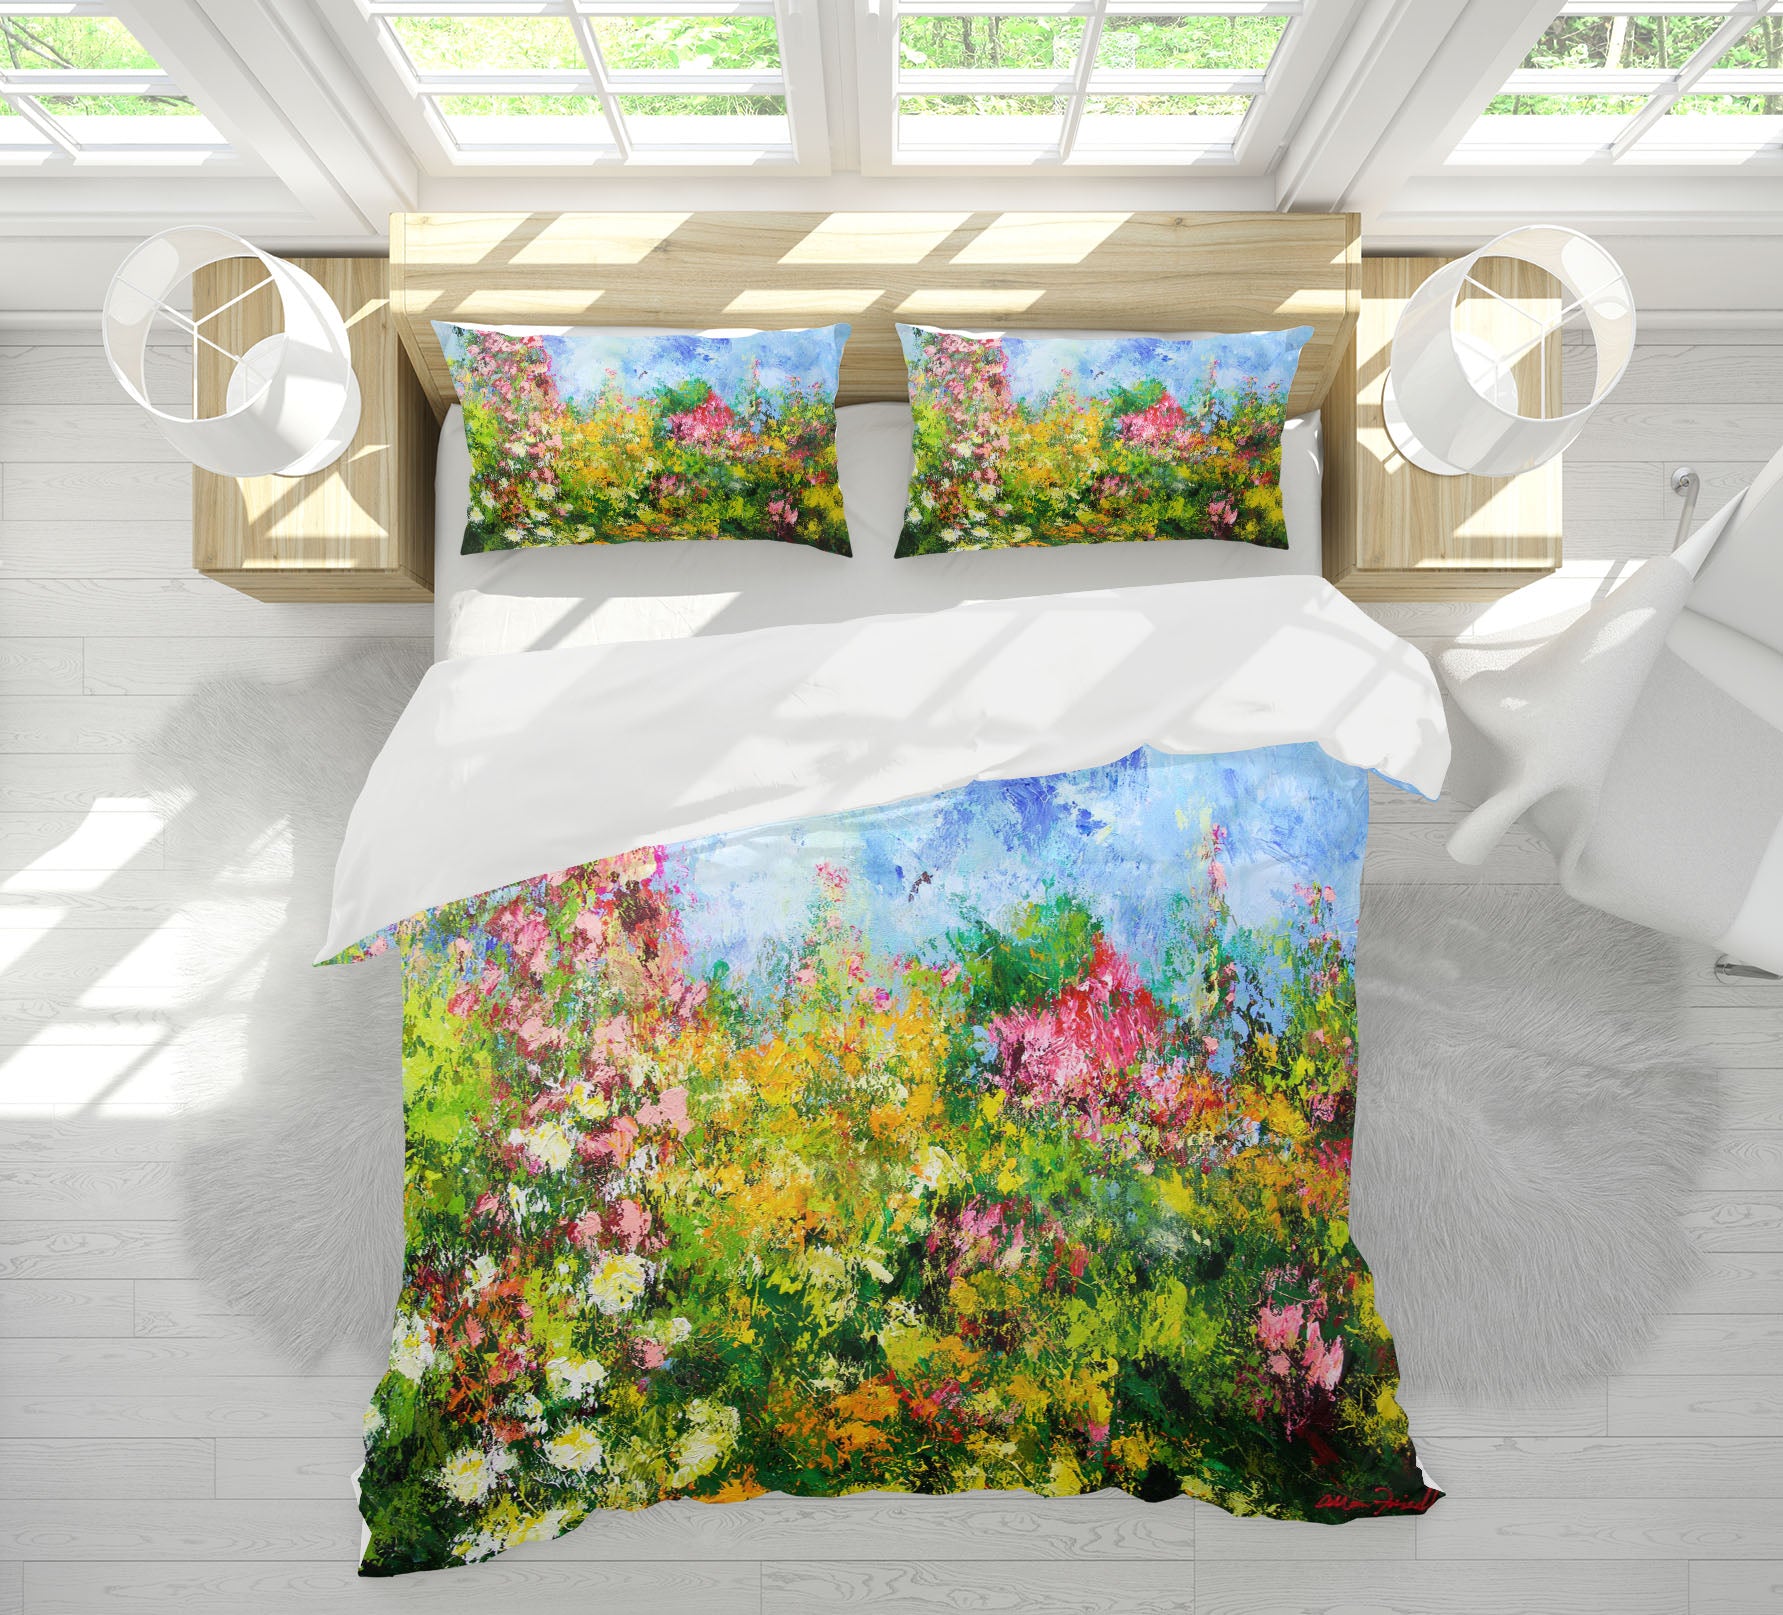 3D Wild Sweetness 1071 Allan P. Friedlander Bedding Bed Pillowcases Quilt